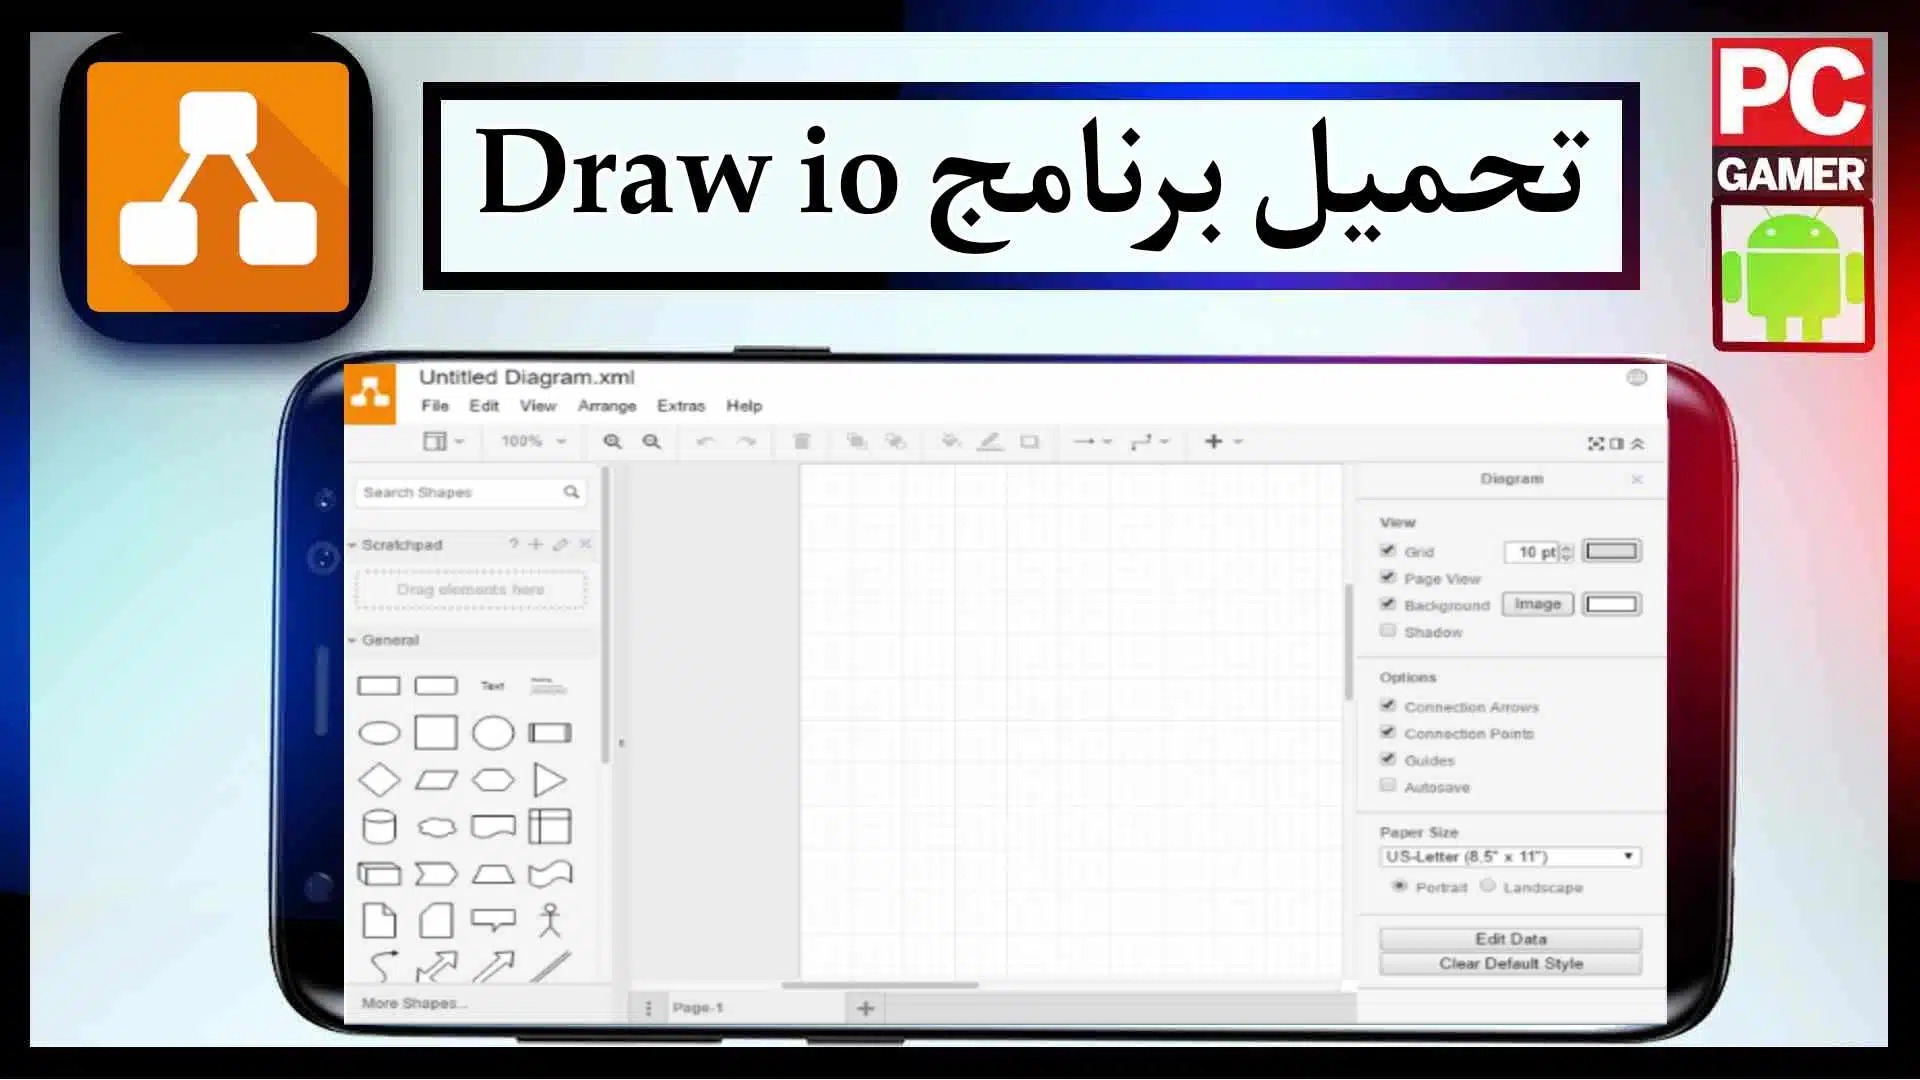 تحميل برنامج Draw io online ل انشاء المخططات والرسوم البيانية 2023 2